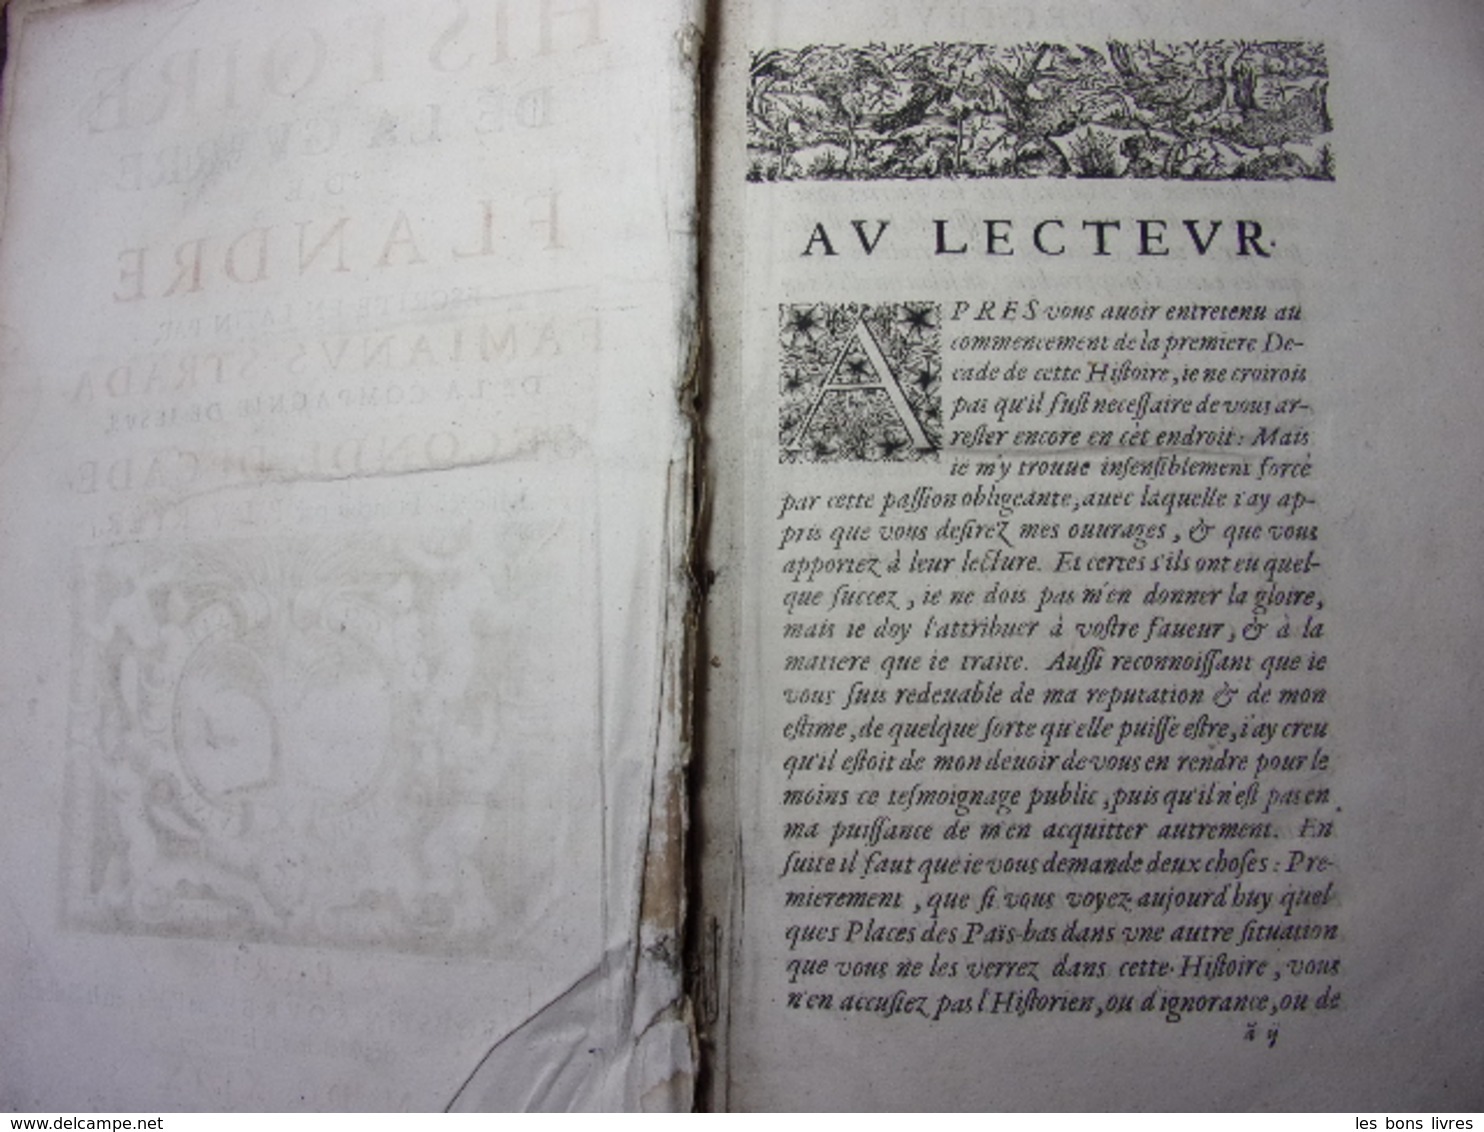 1659. Famianus Strada Histoire de la Guerre des Flandres 2/2vols in folio